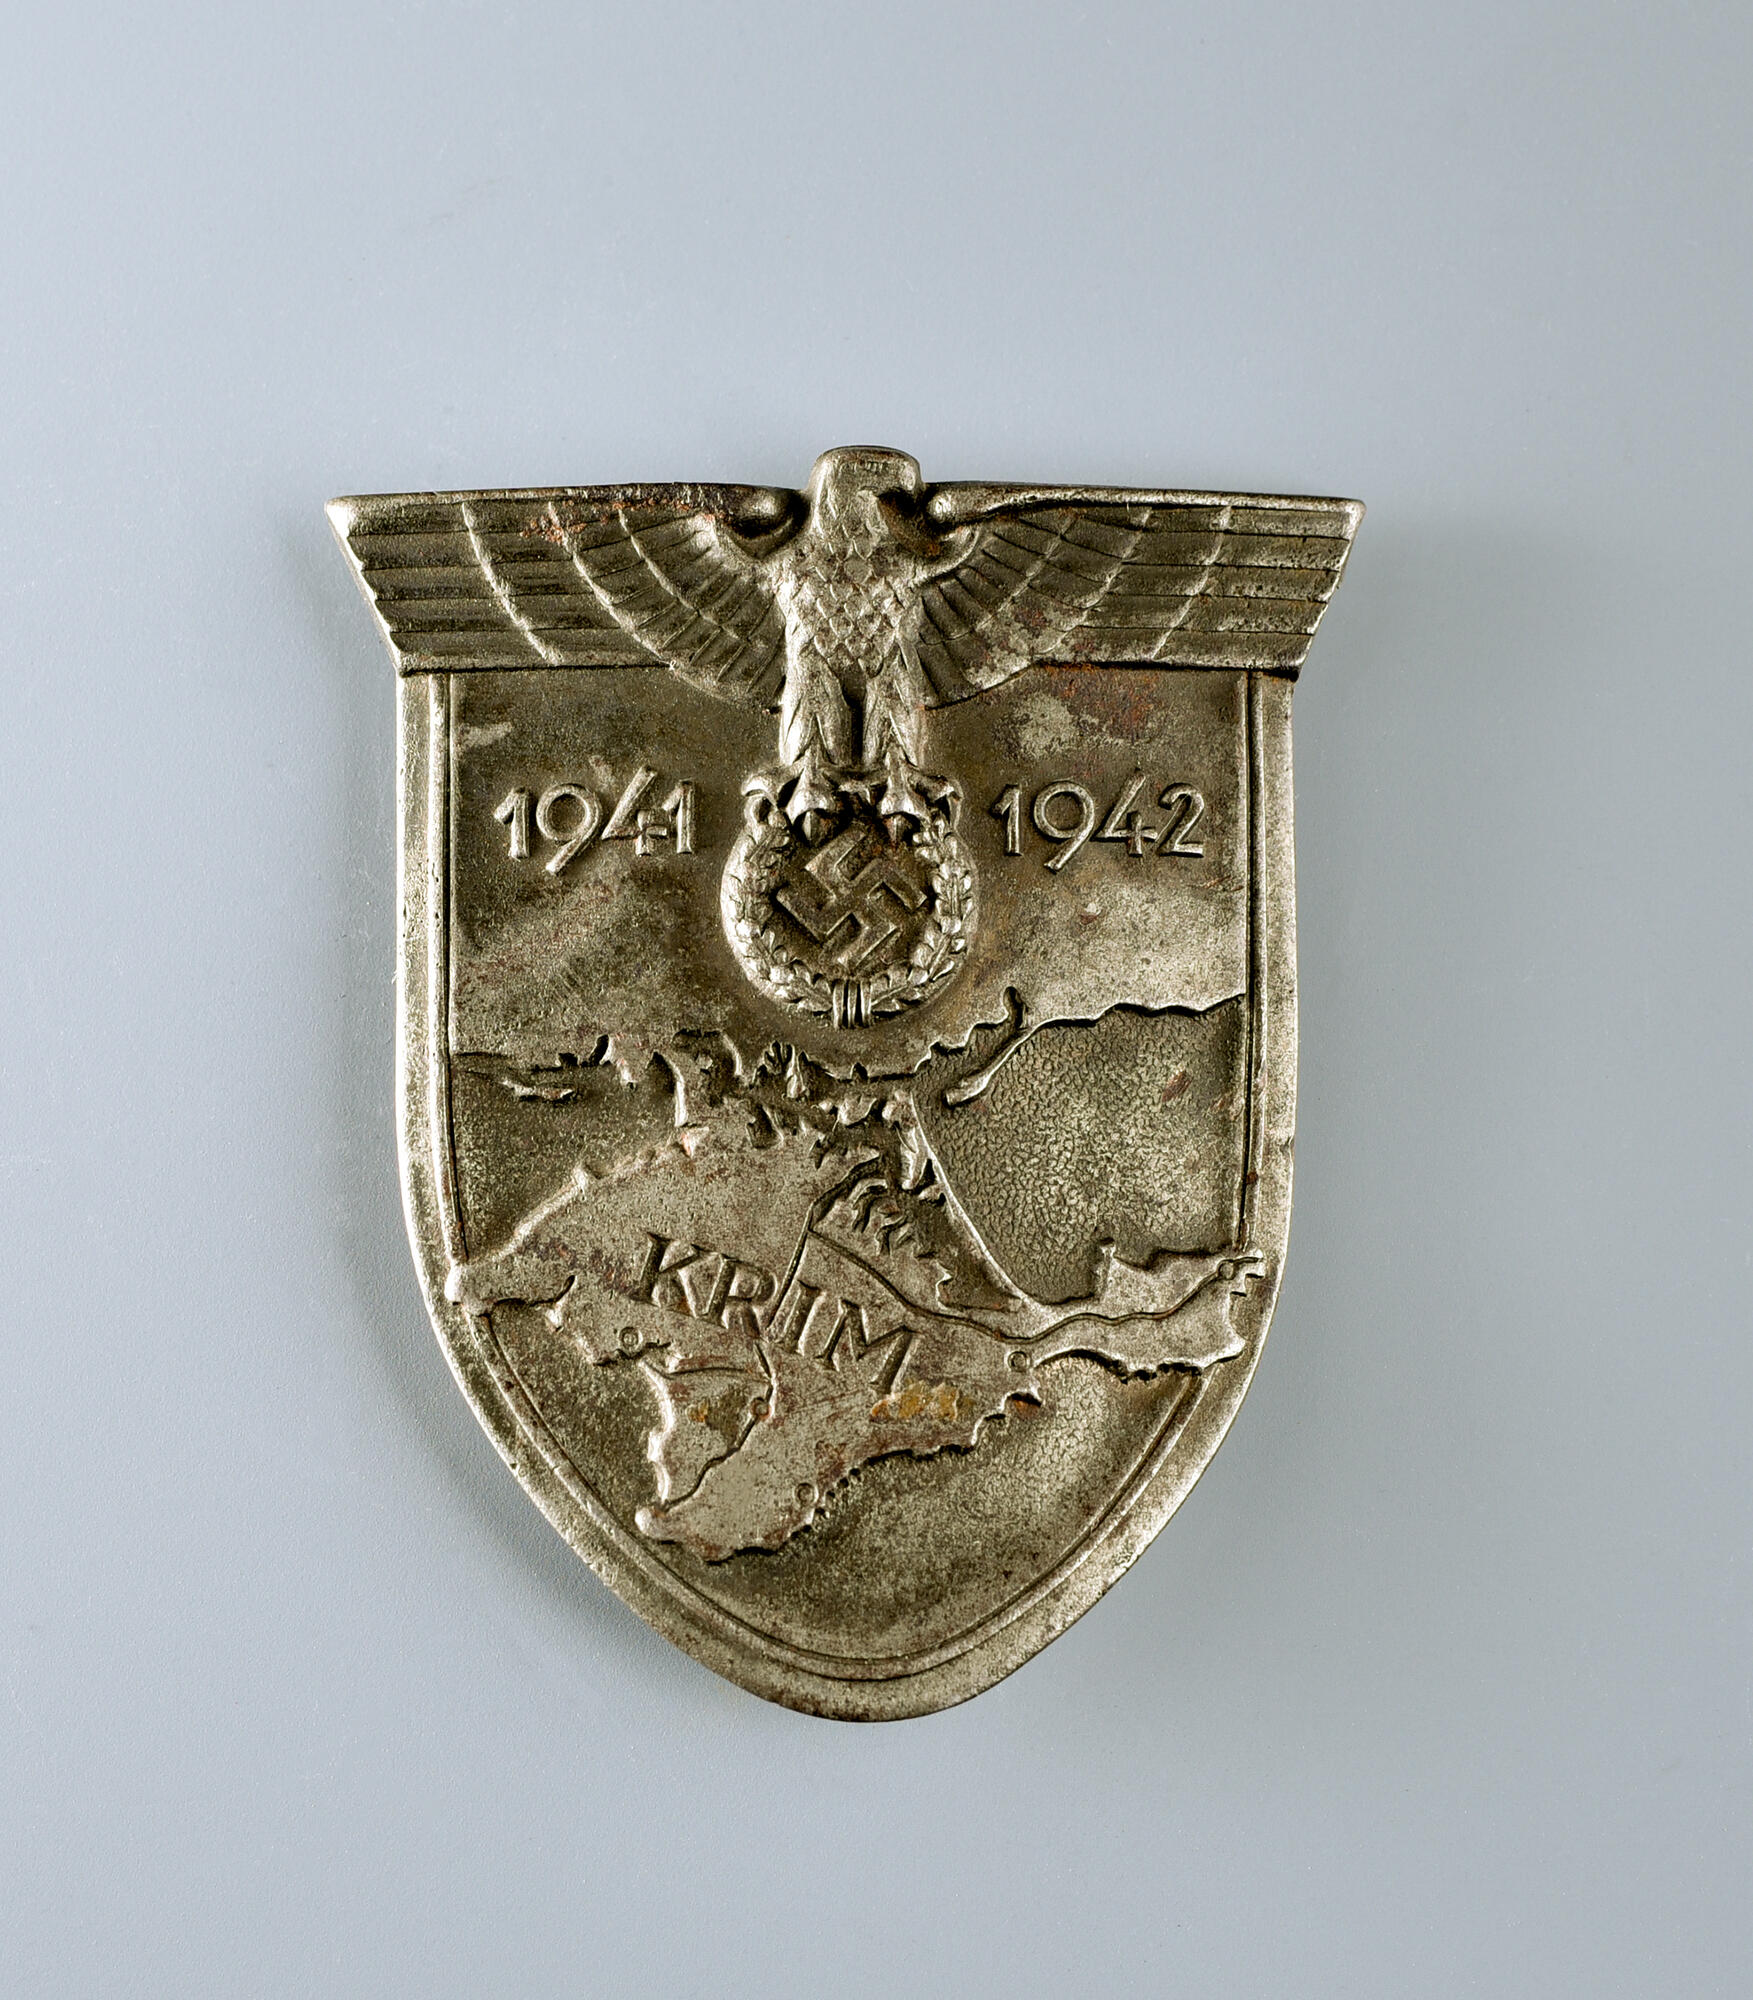 Crimea Shield. Подробное описание экспоната, аудиогид, интересные факты.  Официальный сайт Artefact